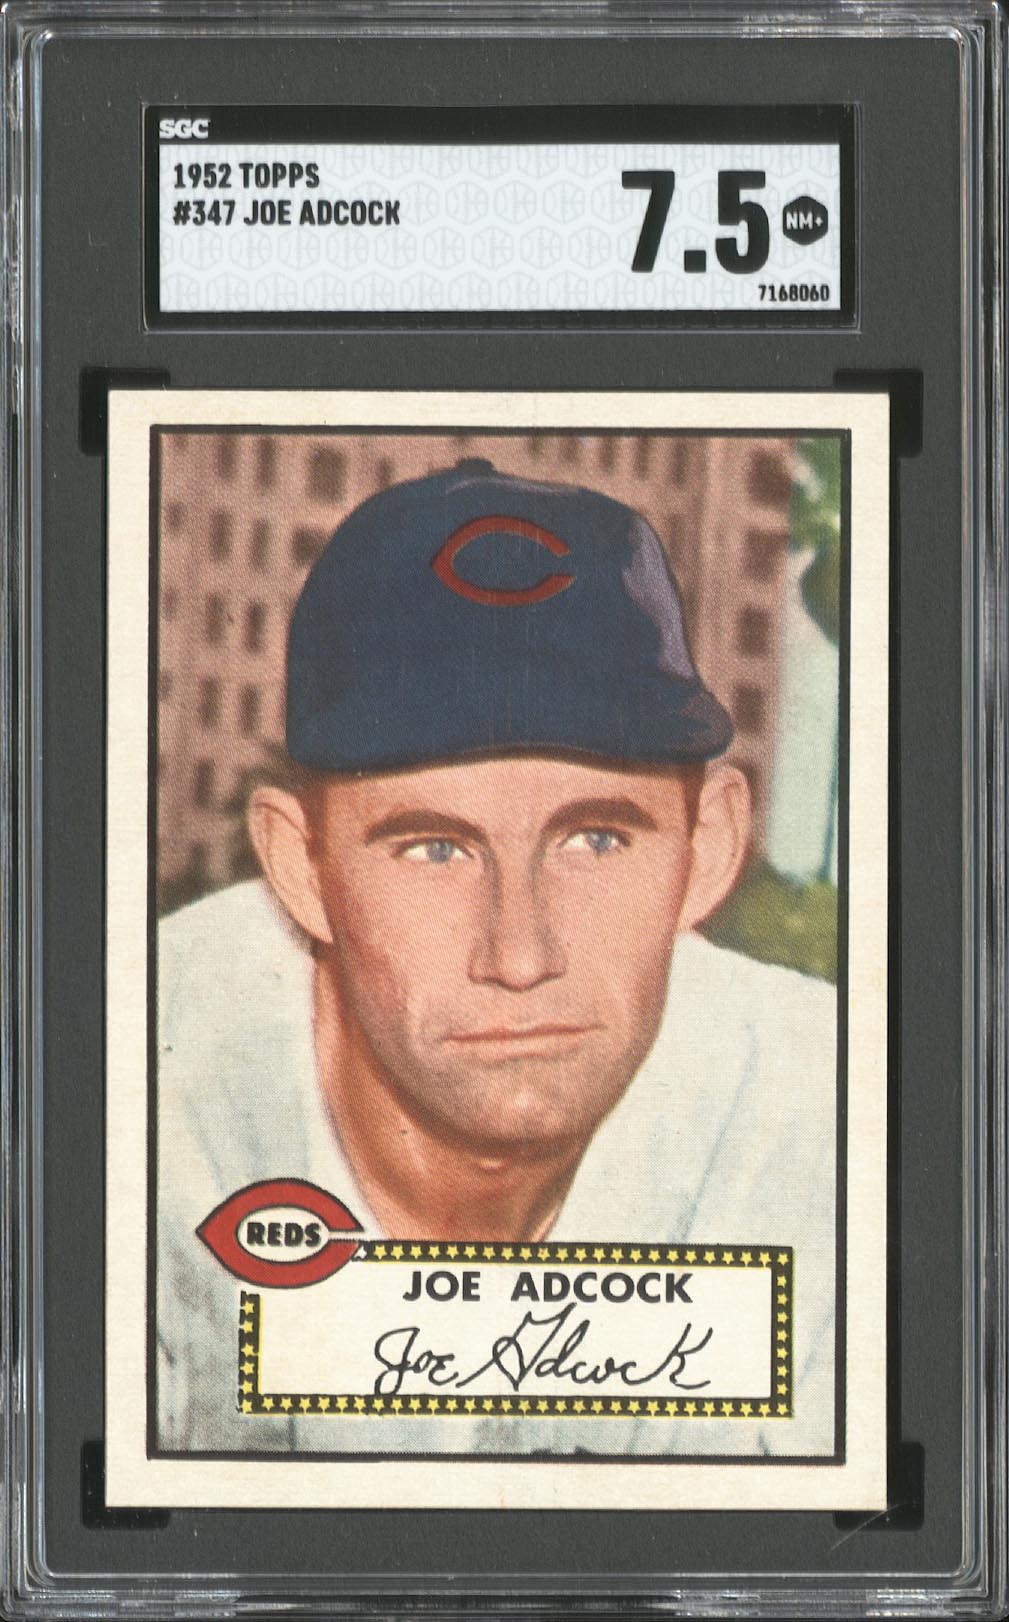  1952 Topps #347 Joe Adcock - SGC NM+ 7.5